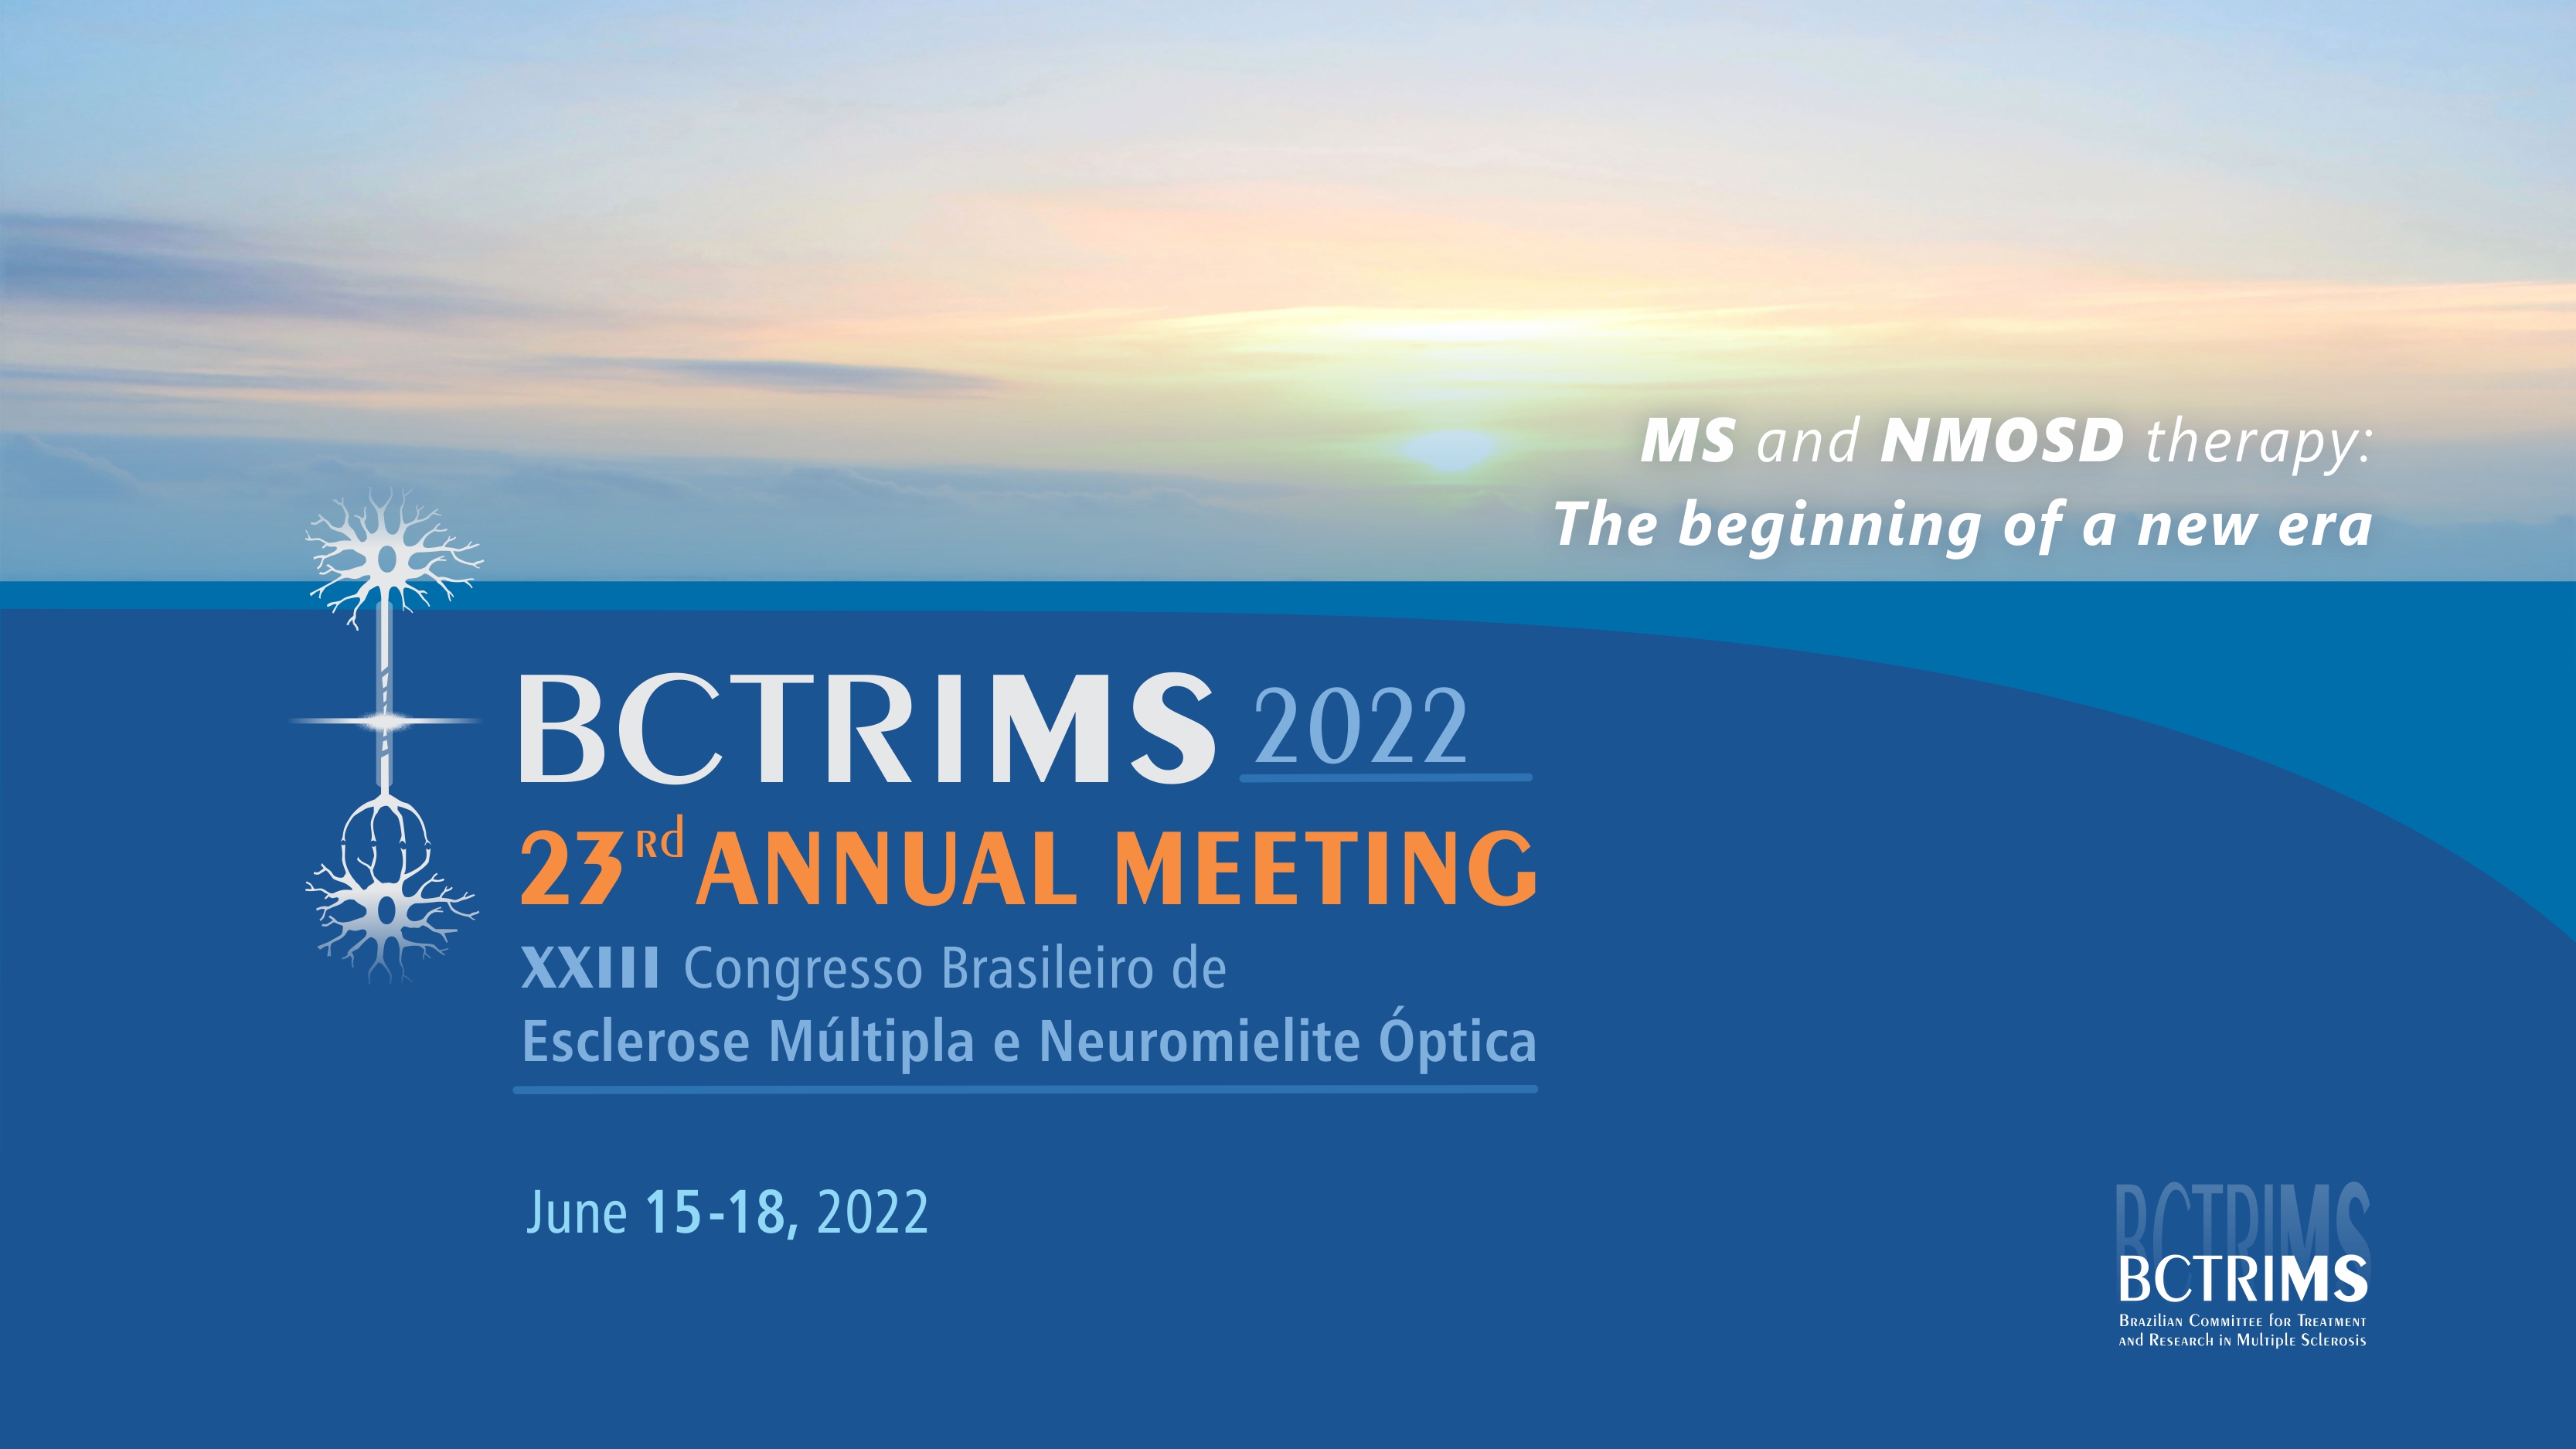 Curso para BCTRIMS 2022 - 23rd Annual Meeting